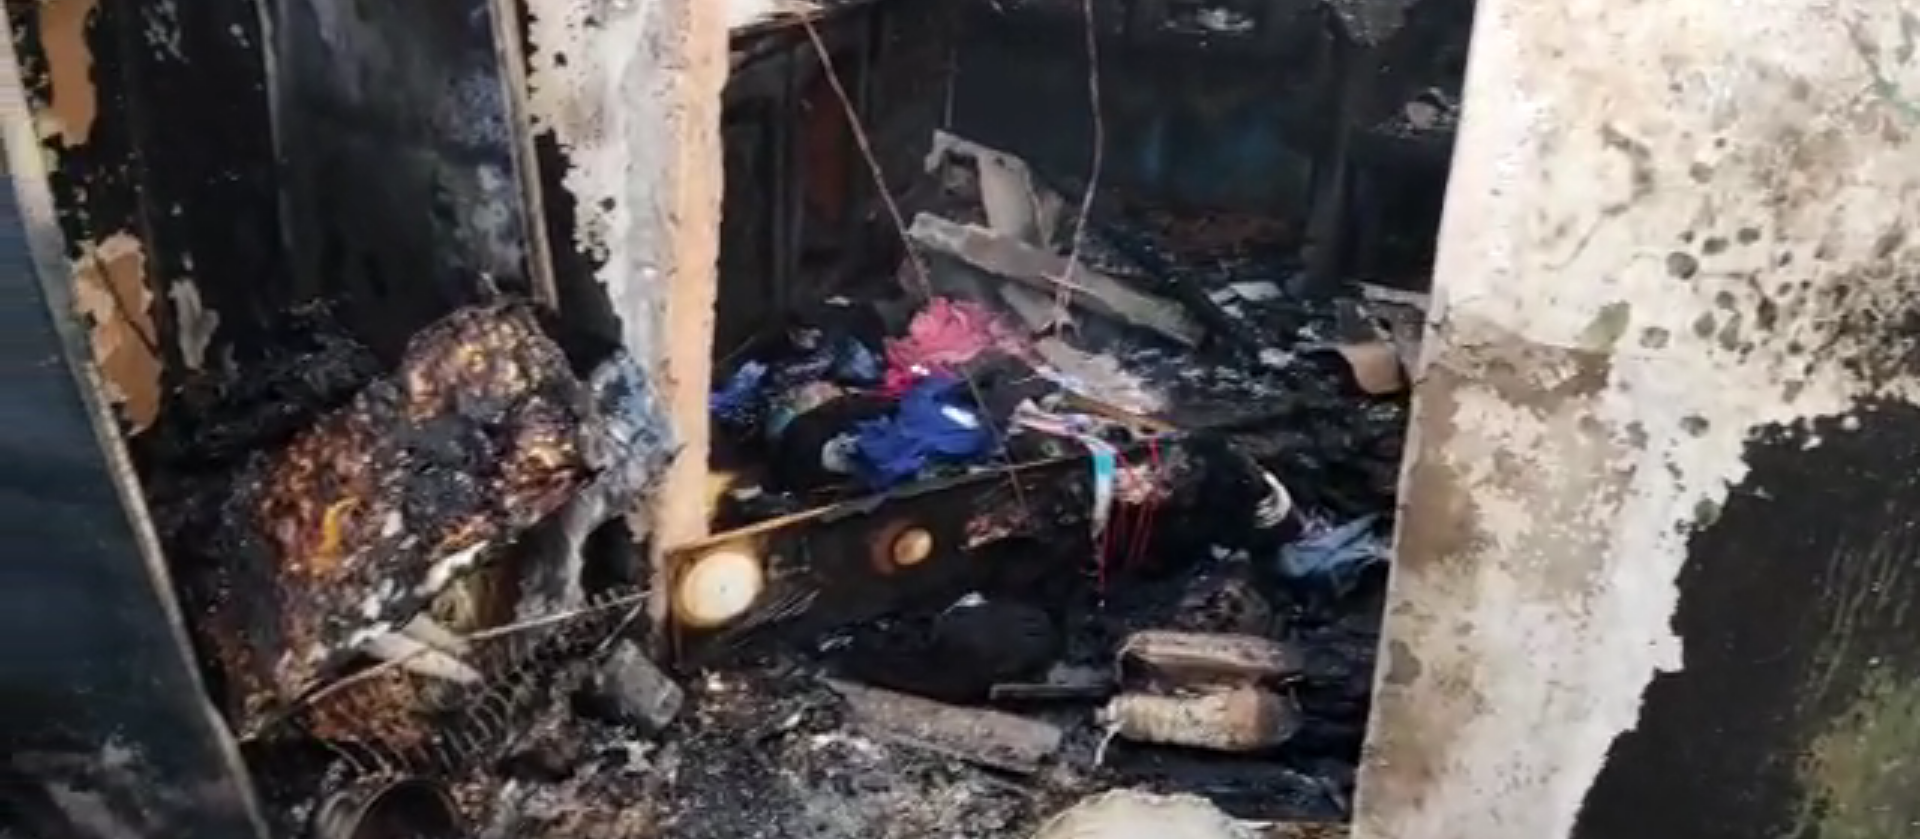 Família perde tudo após casa pegar fogo no Jardim São Silvestre 